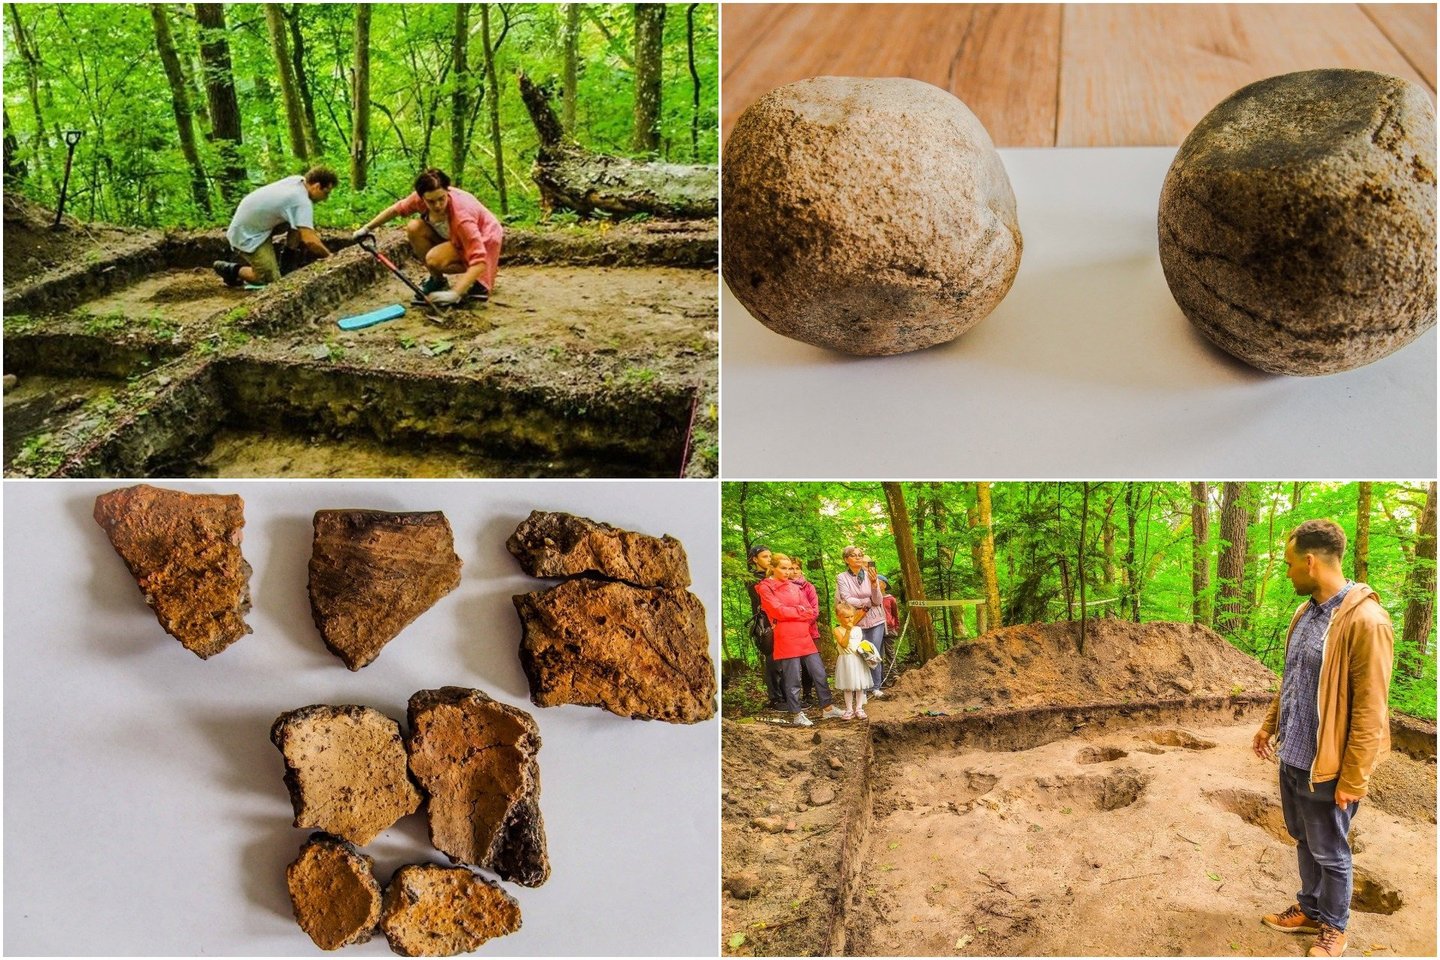  Mokslininkai skelbia, kad Lietuvos pajūryje surasta bronzos amžiaus gyvenvietė, kurioje, sprendžiant iš radinių, labai didelę svarbą turėjo gintaras.<br> dr. Miglės Urbonaitės-Ubės nuotr.